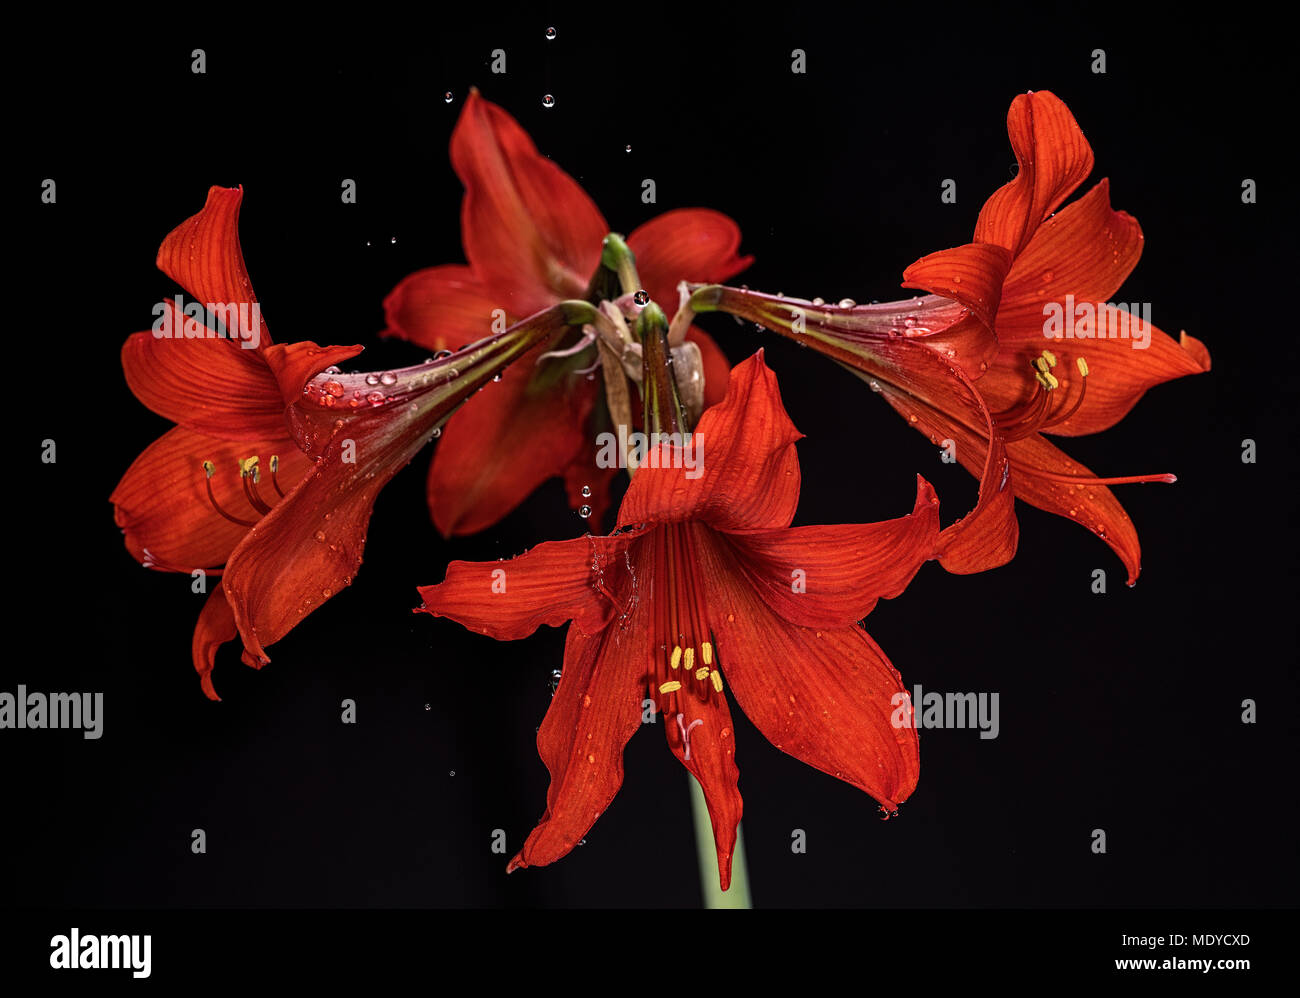 Schönes blühende rote Amaryllis, Blume mit Wassertropfen auf Blüten und Spritzwasser. Schwarzen Hintergrund. Fine Art Fotografie. Bild mit hoher Auflösung. Stockfoto